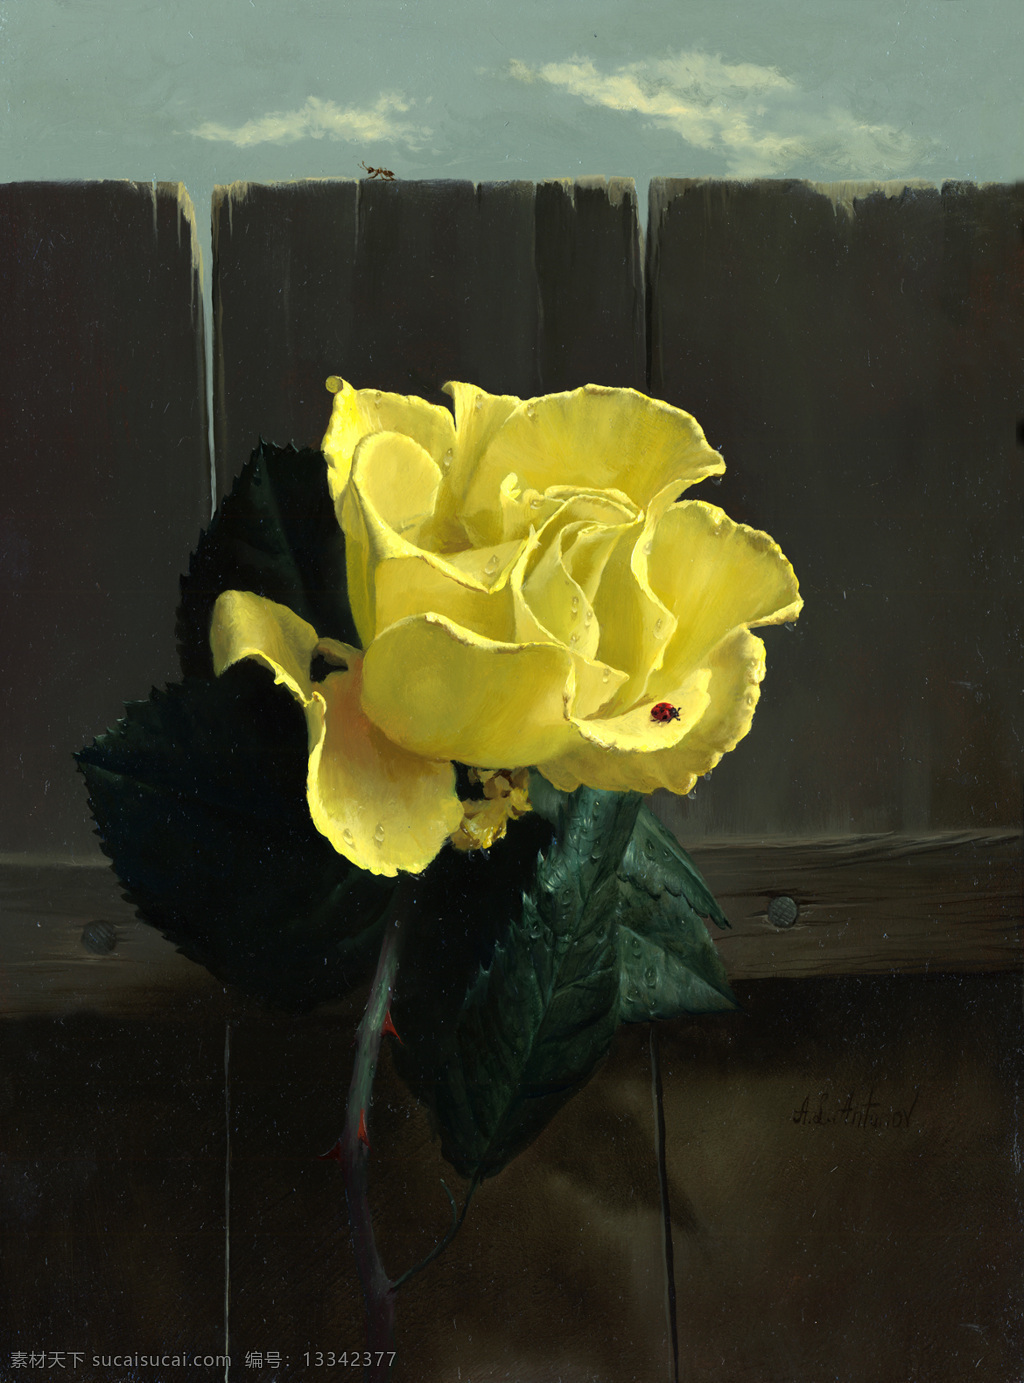 安东诺夫 静物 油画作品 黄 玫瑰 大师级 油画 黑色